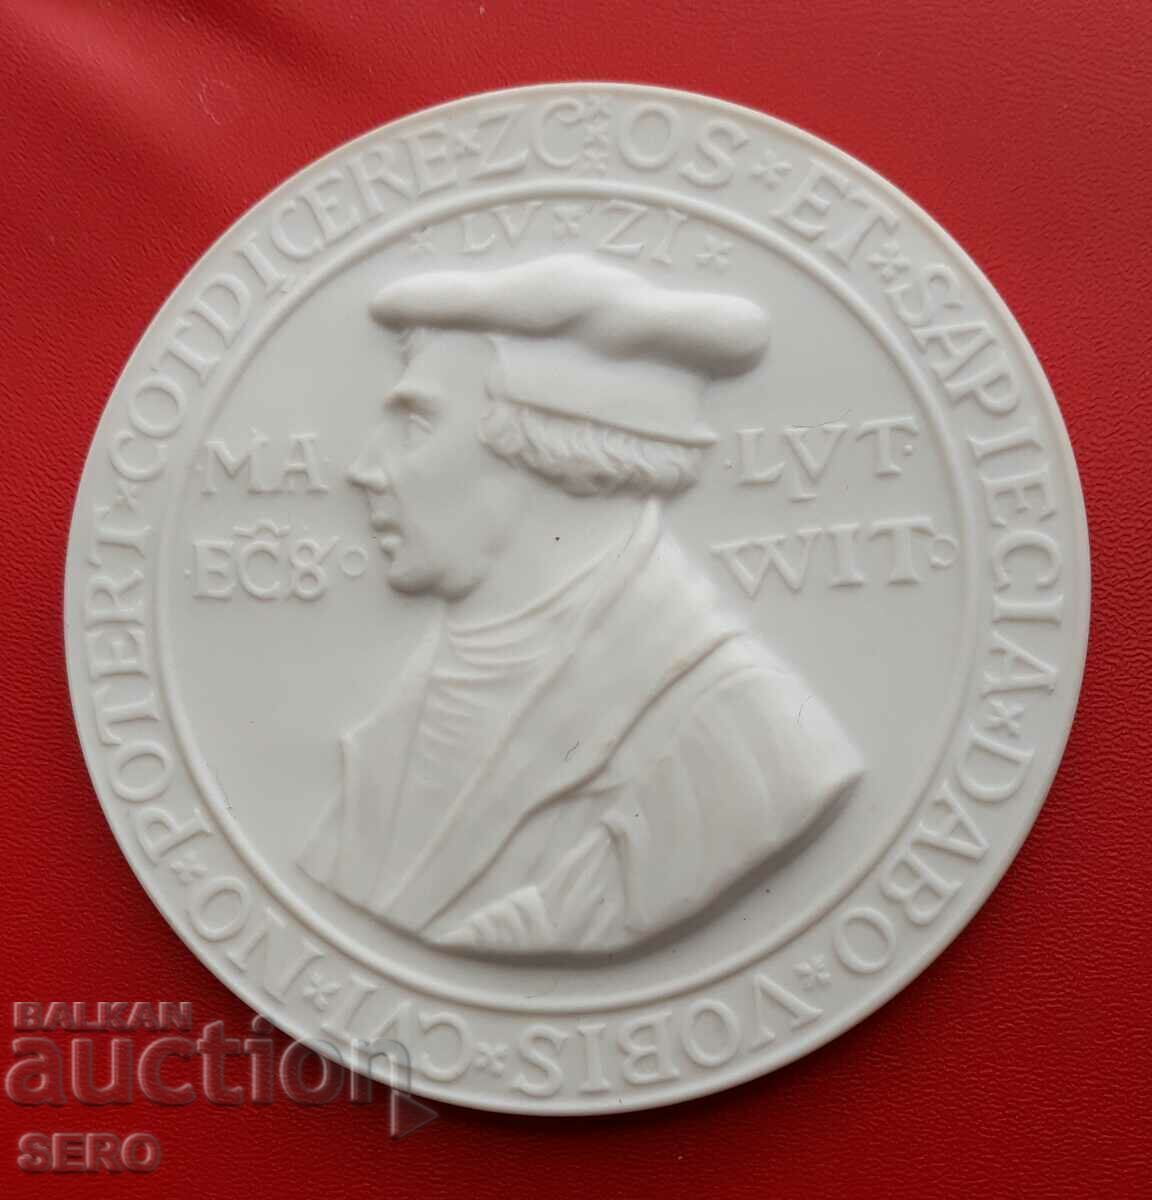 Γερμανία-ΛΔΓ-Μετάλλιο μεγάλης πορσελάνης 1983-Martin Luther